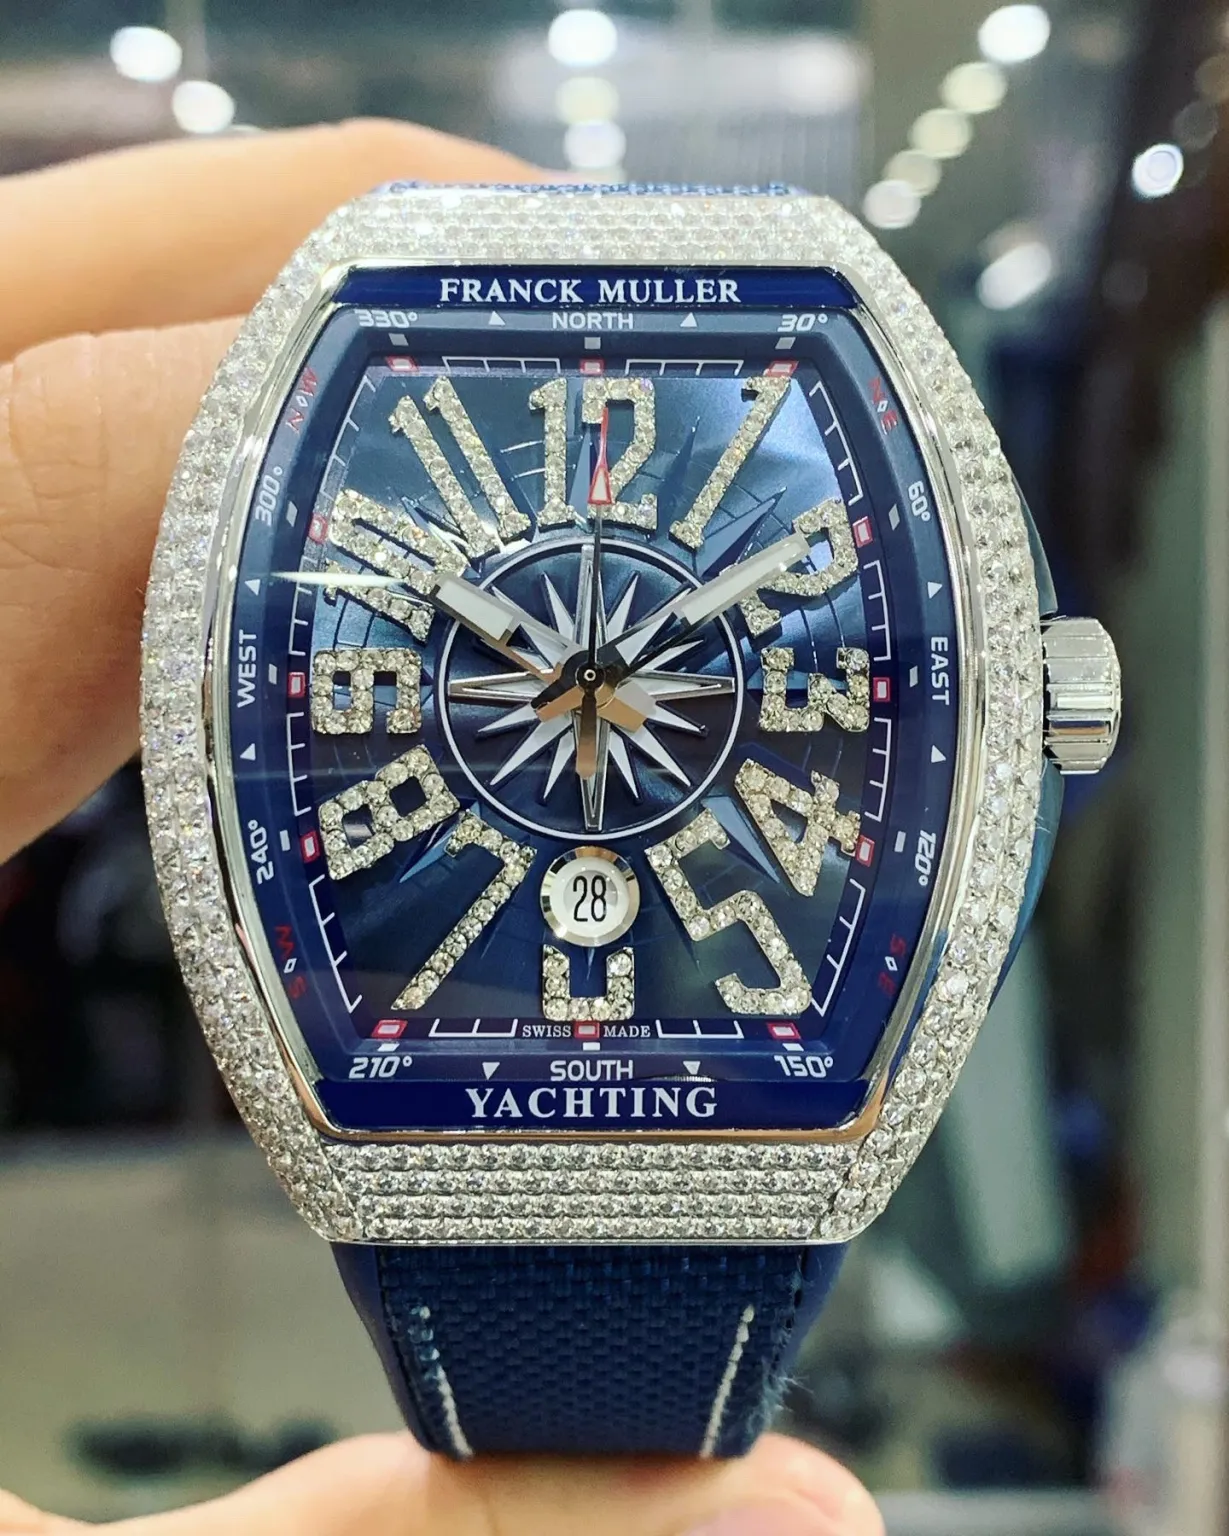 Thu mua đồng hồ Franck Muller cũ giá cao ở đâu? Đến ngay Thu Mua Đồng Hồ -  Báo Long An Online